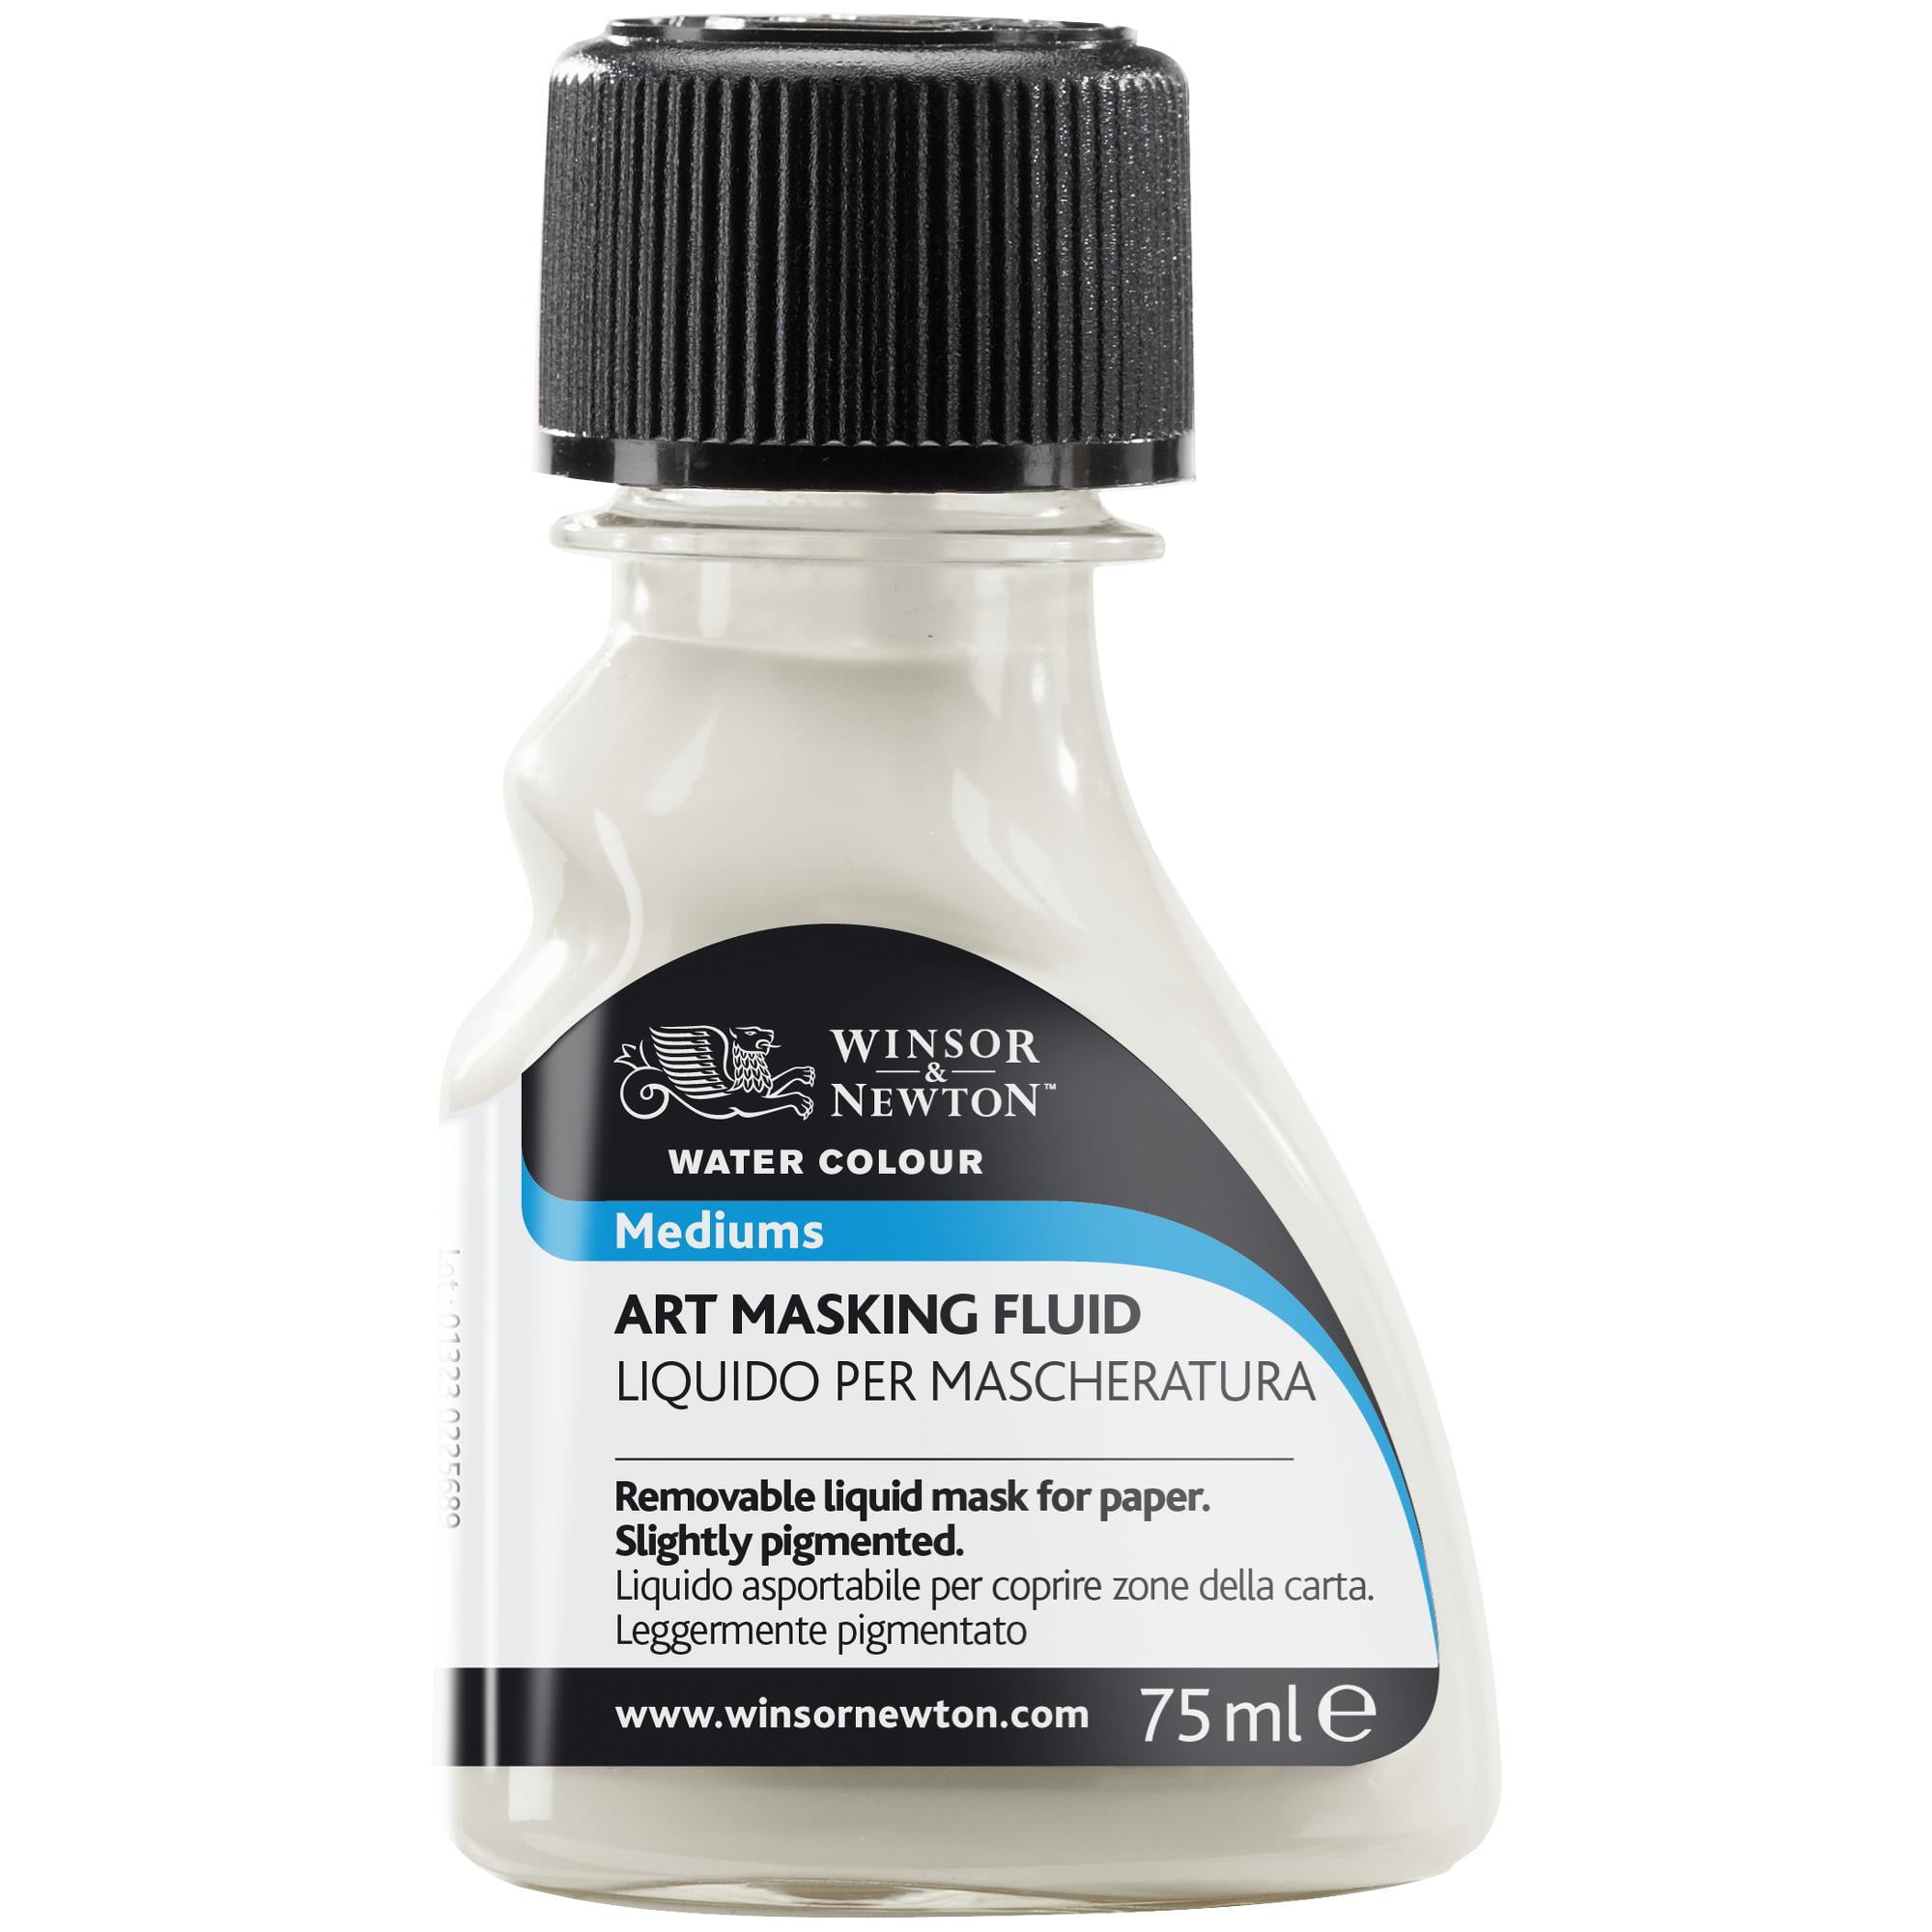  Art Masking Fluid Watercolor Mediums 75Ml Professional White  Watercolor Masking Fluid Painting Tools Artist Art Supplies : Arts, Crafts  & Sewing